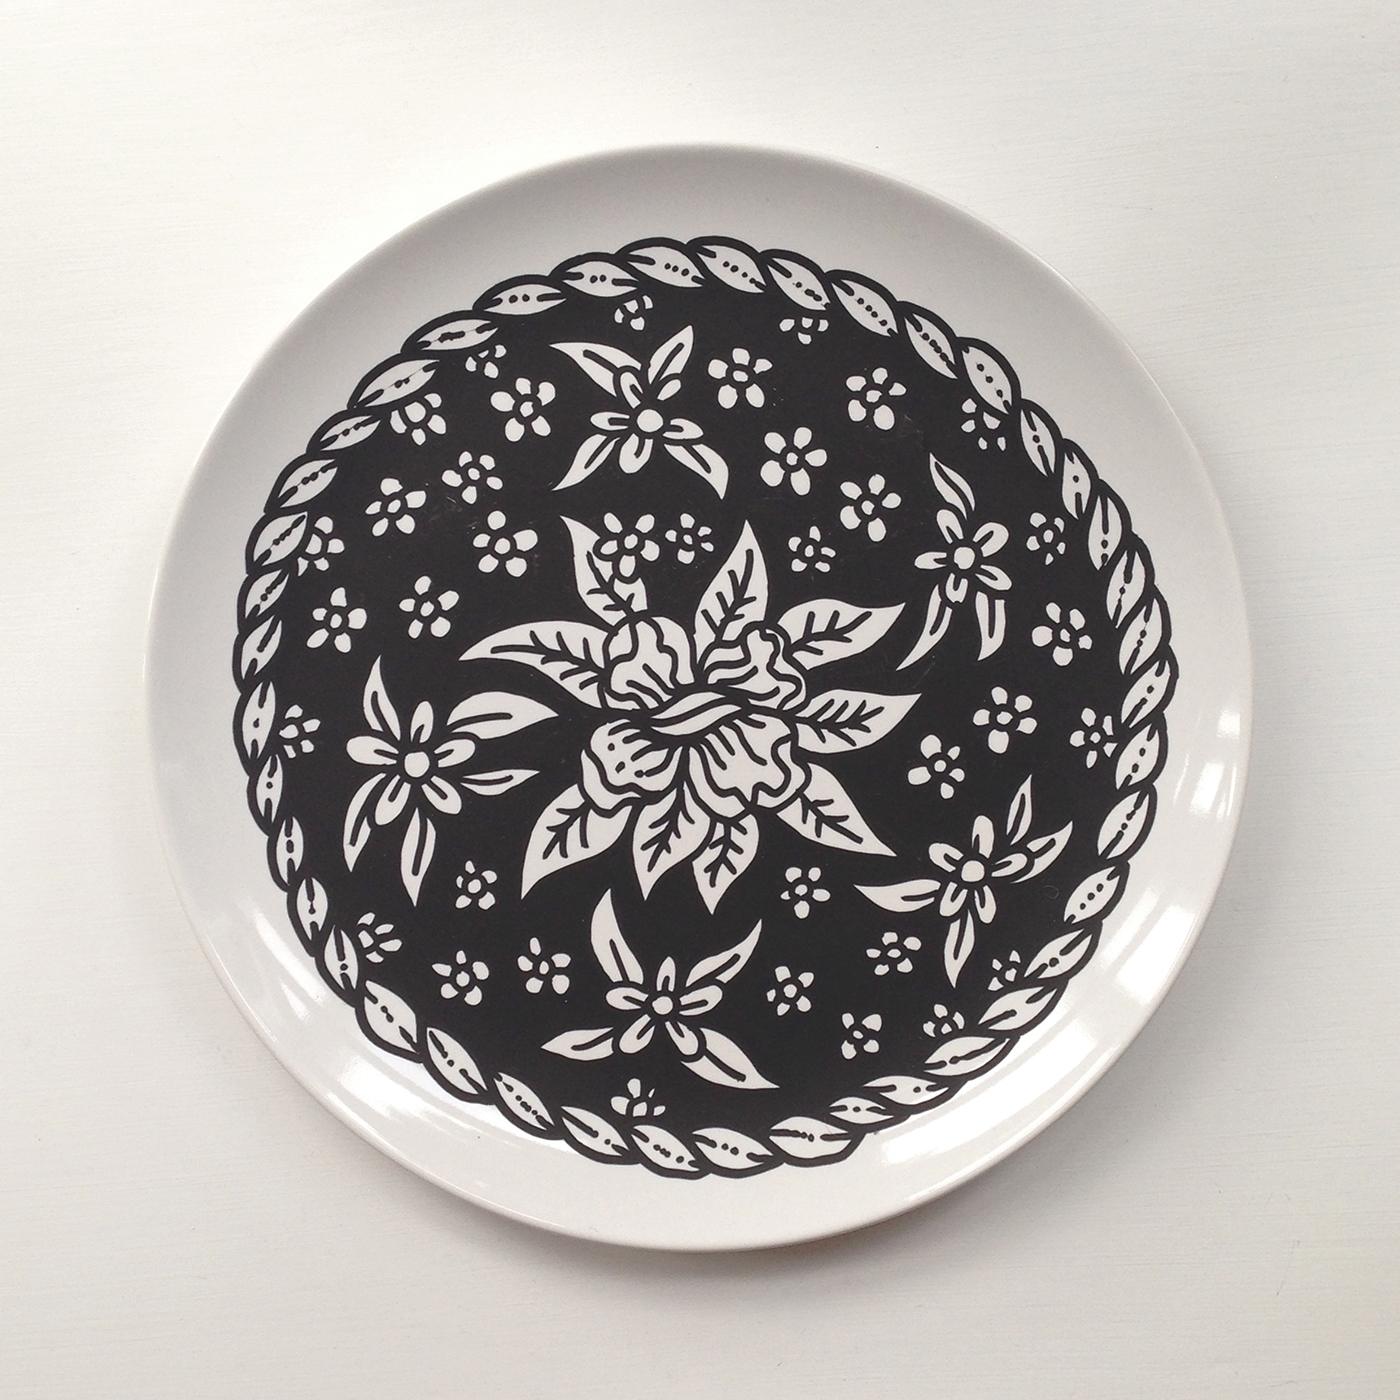 ceramic plates illo ink sketch doodle Posca Drawing 